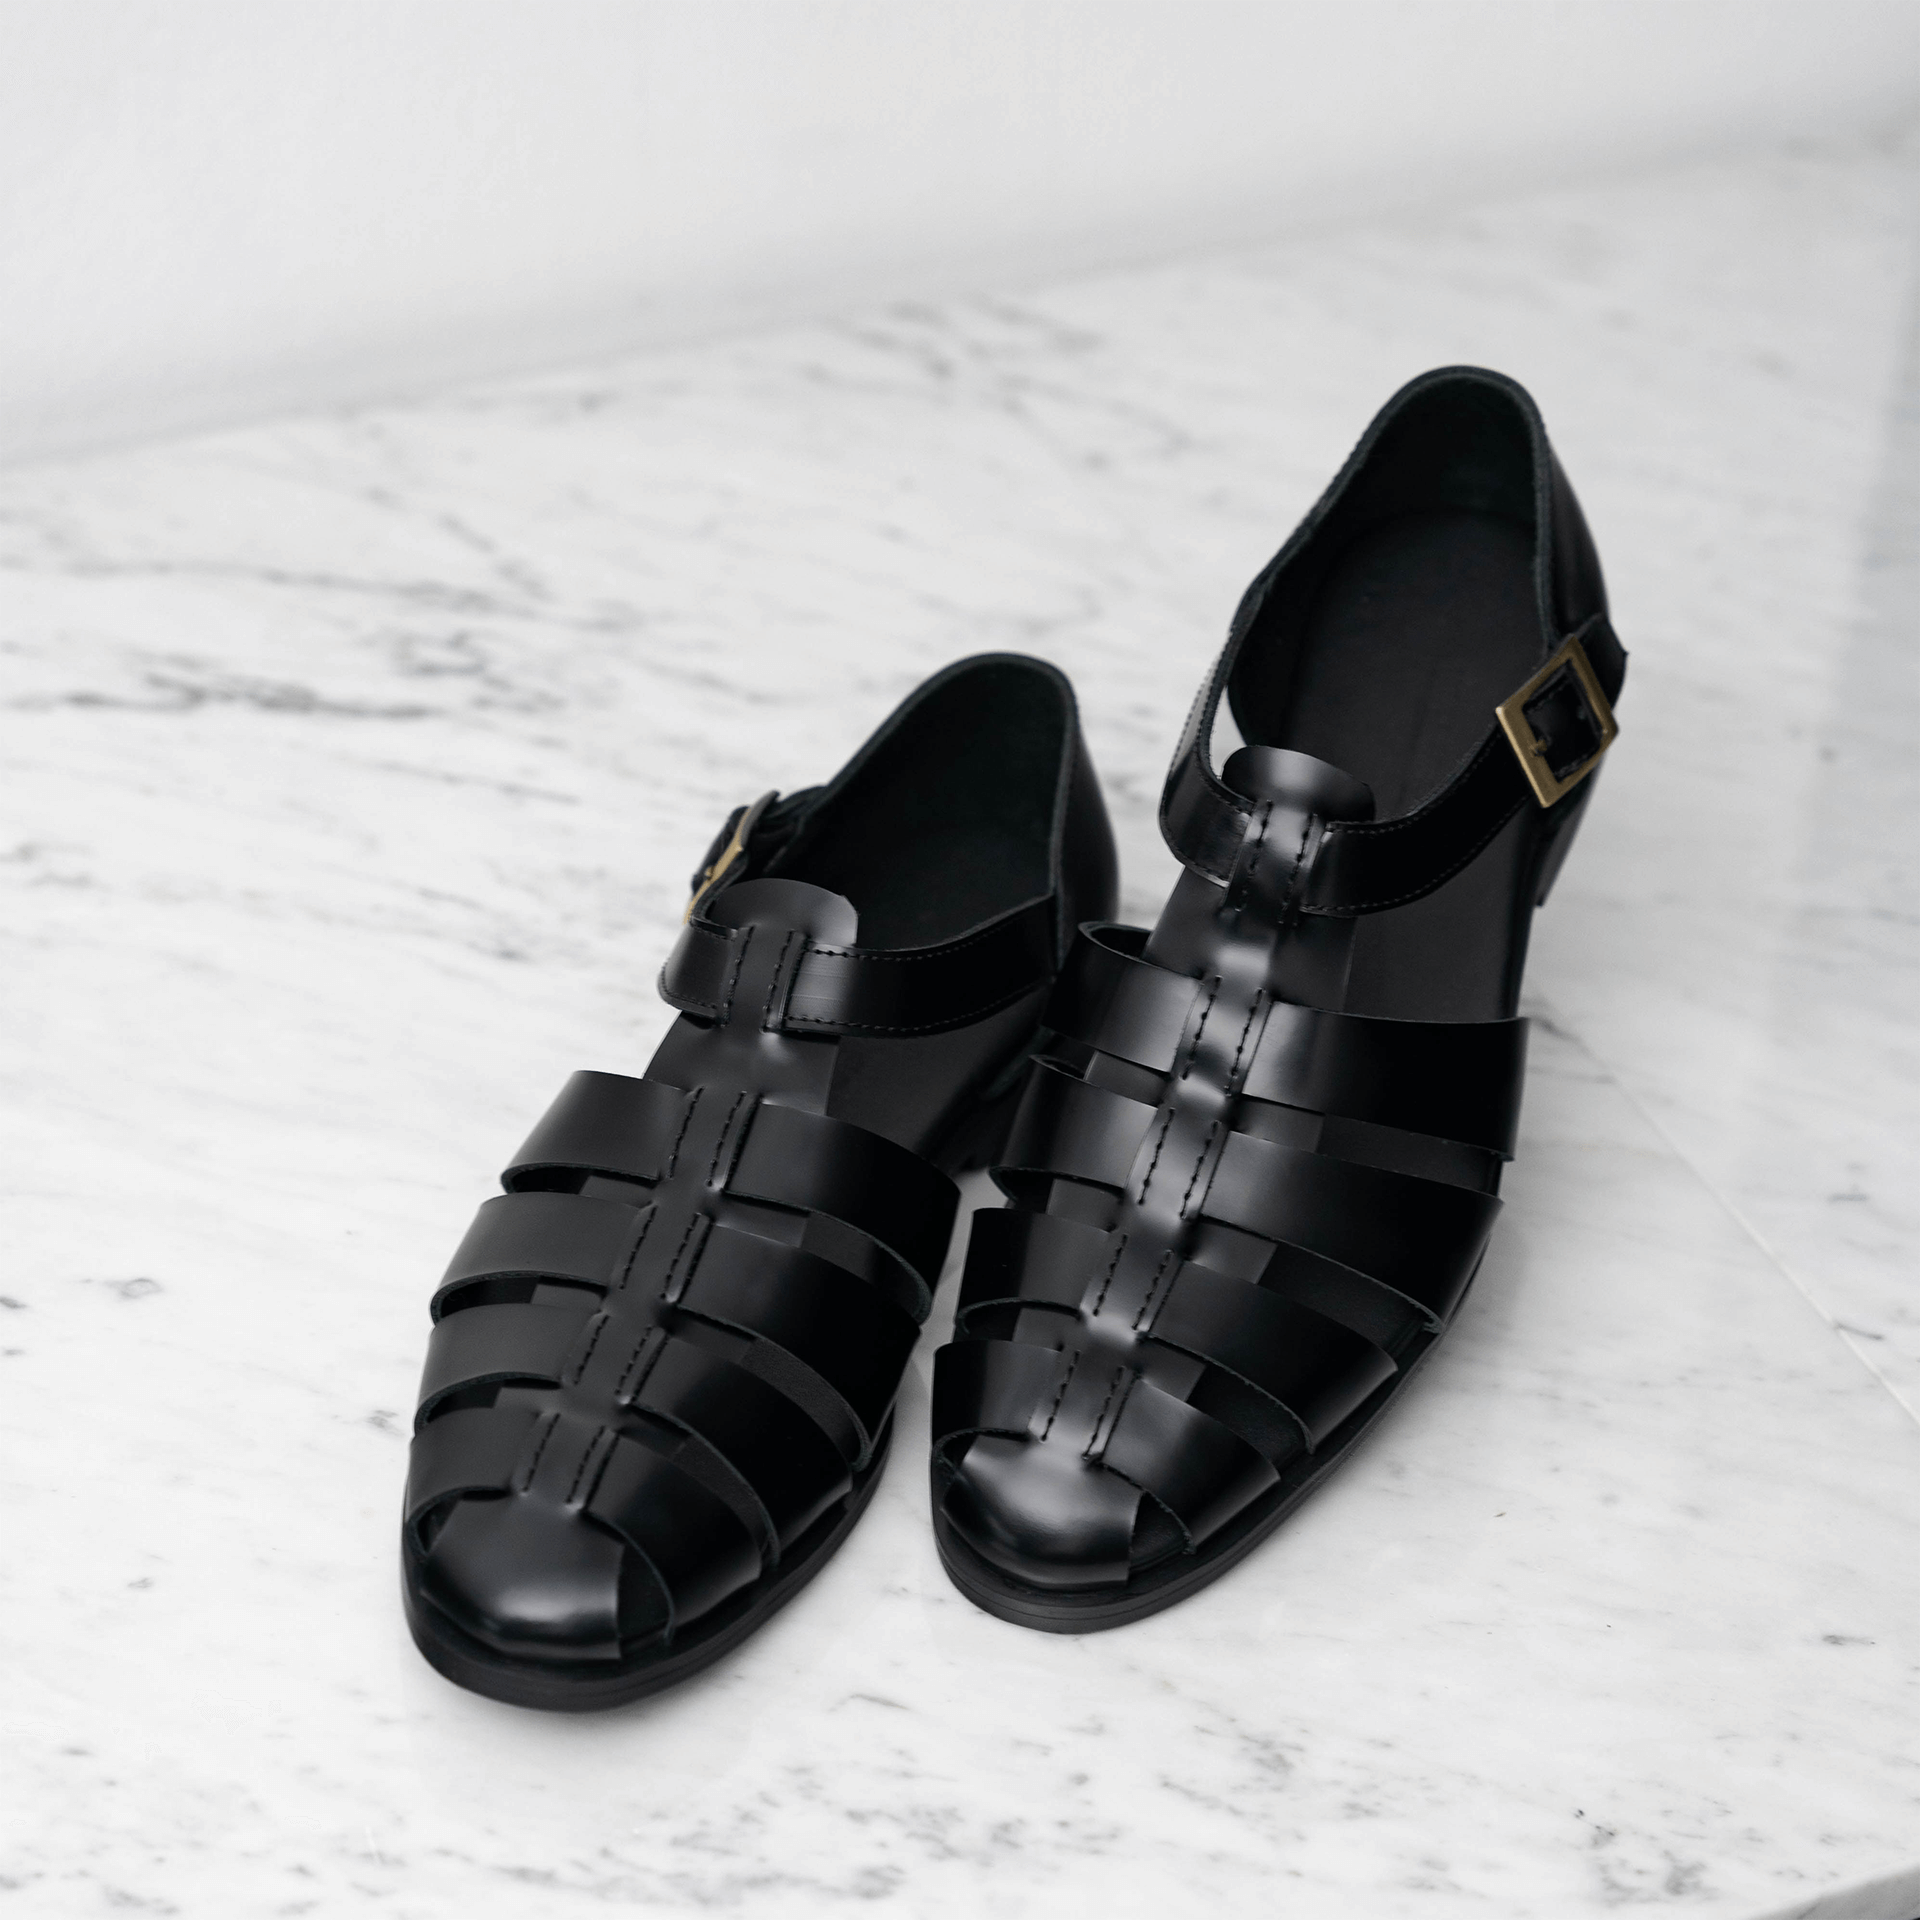 Leather greek sandals, Garden in Black